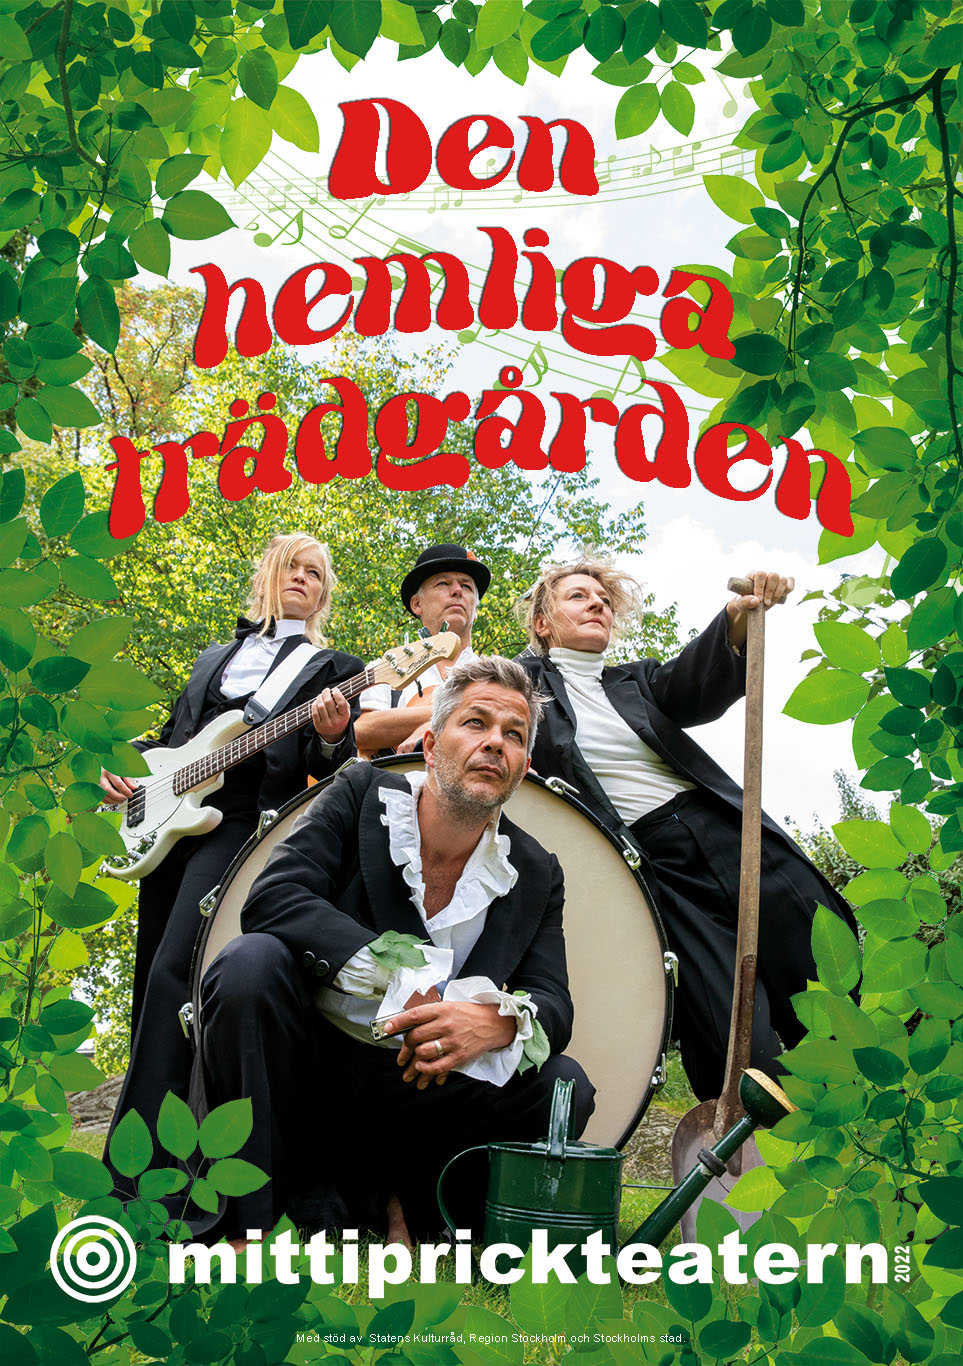 En poster för föreställningen Den hemliga trädgården. Fyra personer som står ute i det gröna med instrument.